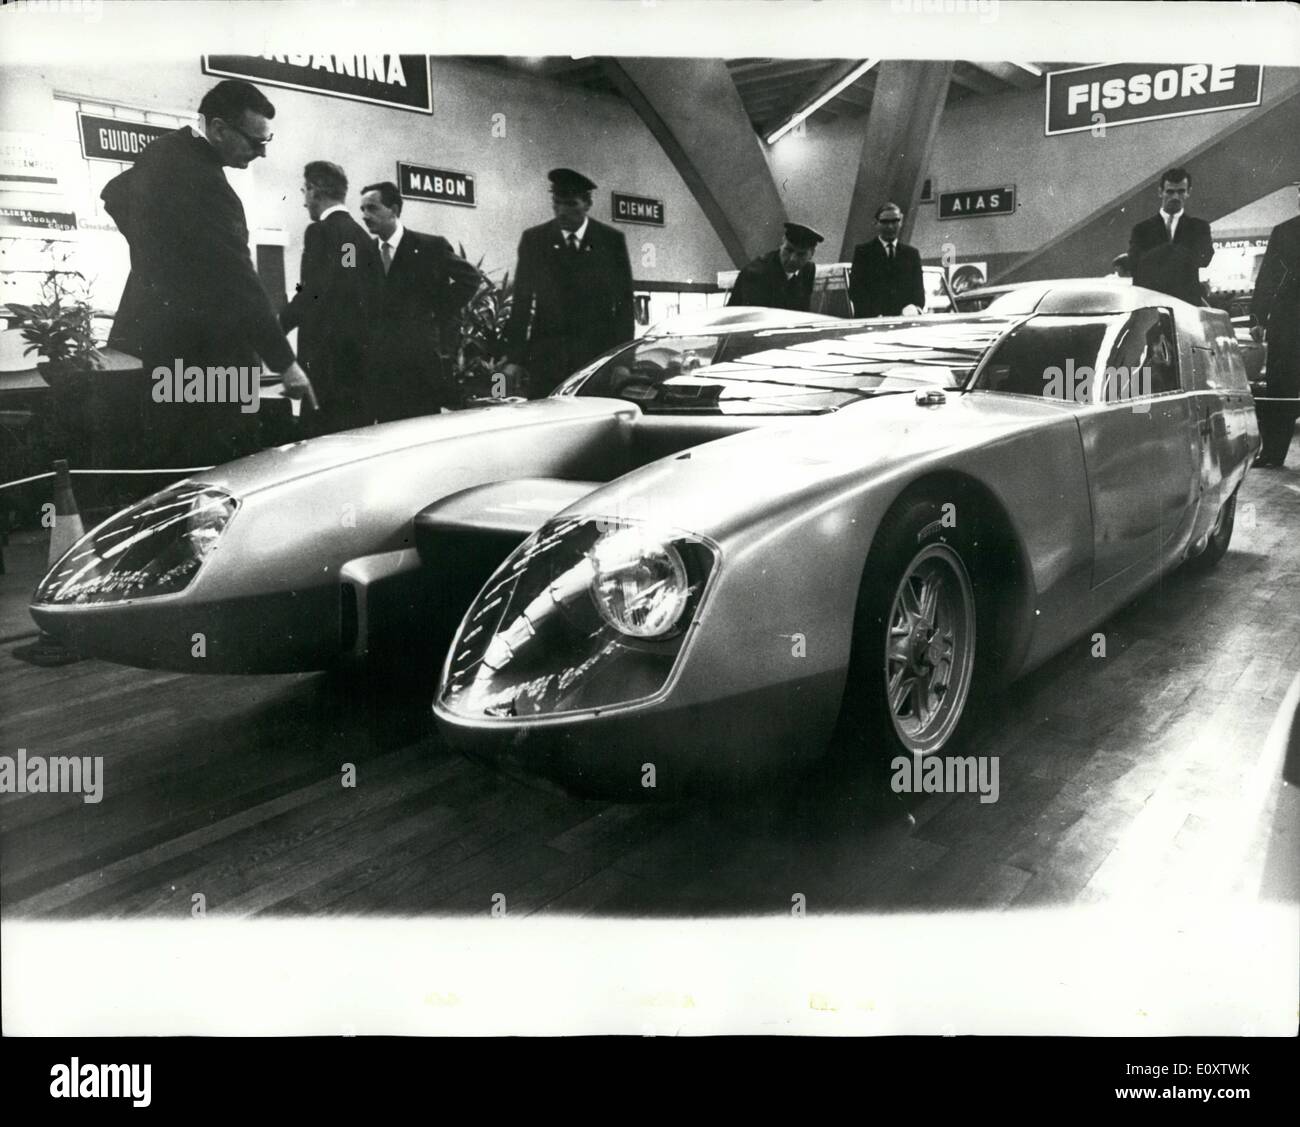 Nov. 11, 1967 - Il silver Fox - un catamarano -style in mostra presso la international motor show di Torino, è stato l'OSI Bisiluro, 1.000 auto c.c. chiamato ''Silver Fox''. Ha fatto una velocità in eccesso di 100 mph, pilotato da Taruffi. Il conducente siede in uno dei compartimenti e il motore è in altri. Il design e la tecnica deve molto a rocketry e missili . foto mostra una vista frontale del ''Silver fox" in corrispondenza del motore mostra a Torino. Foto Stock